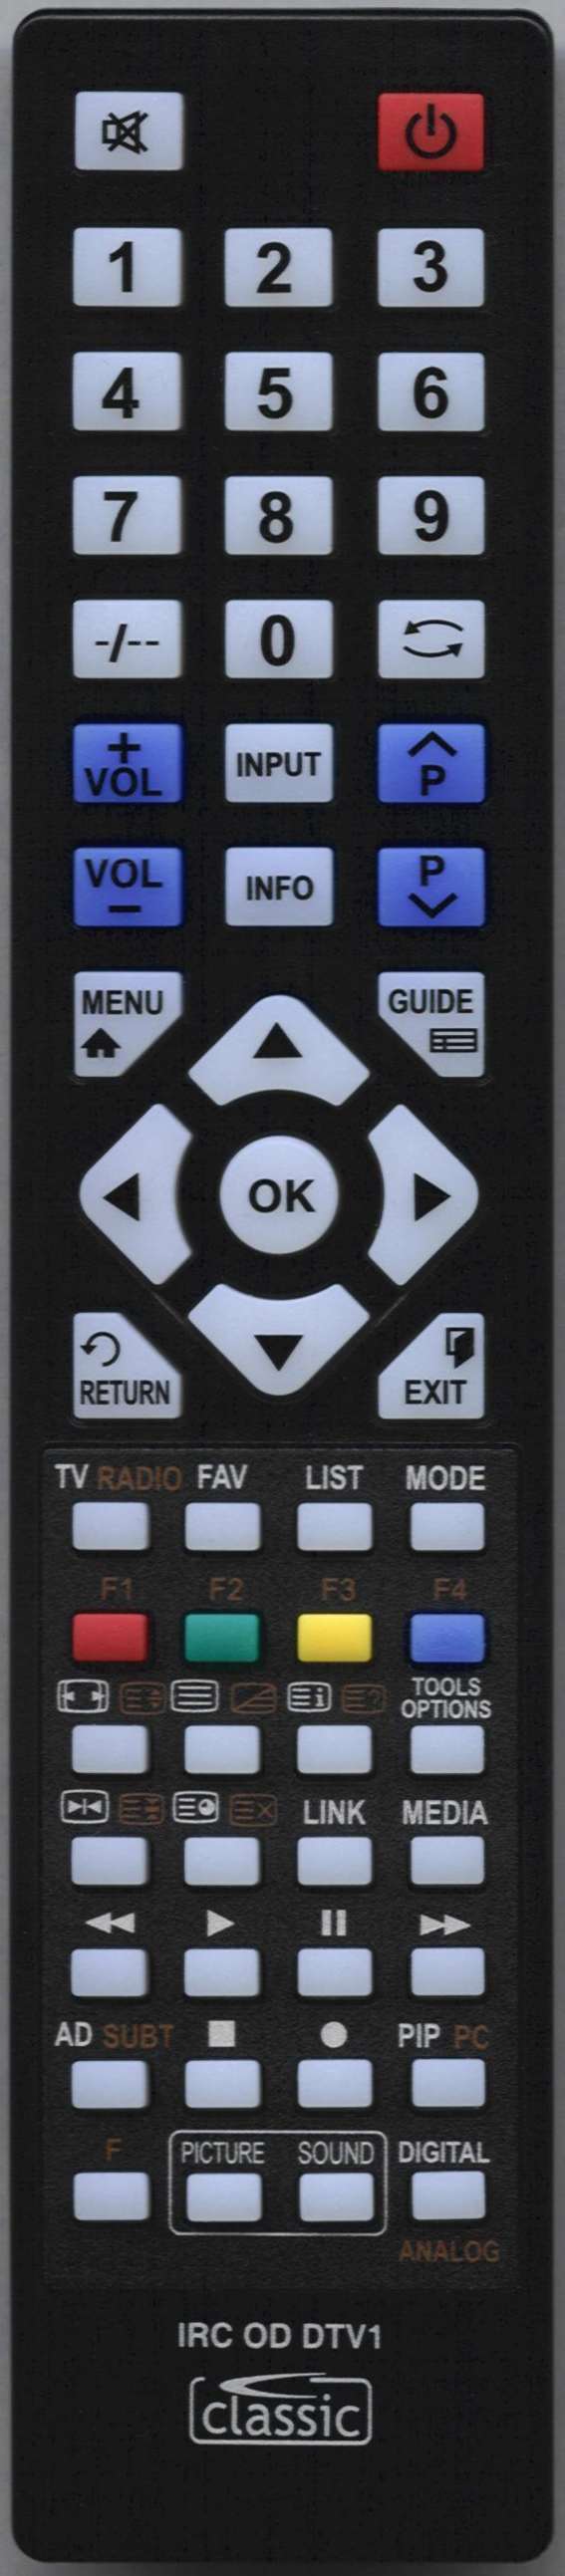 ORION 3139 148 52152 Remote Control Alternative